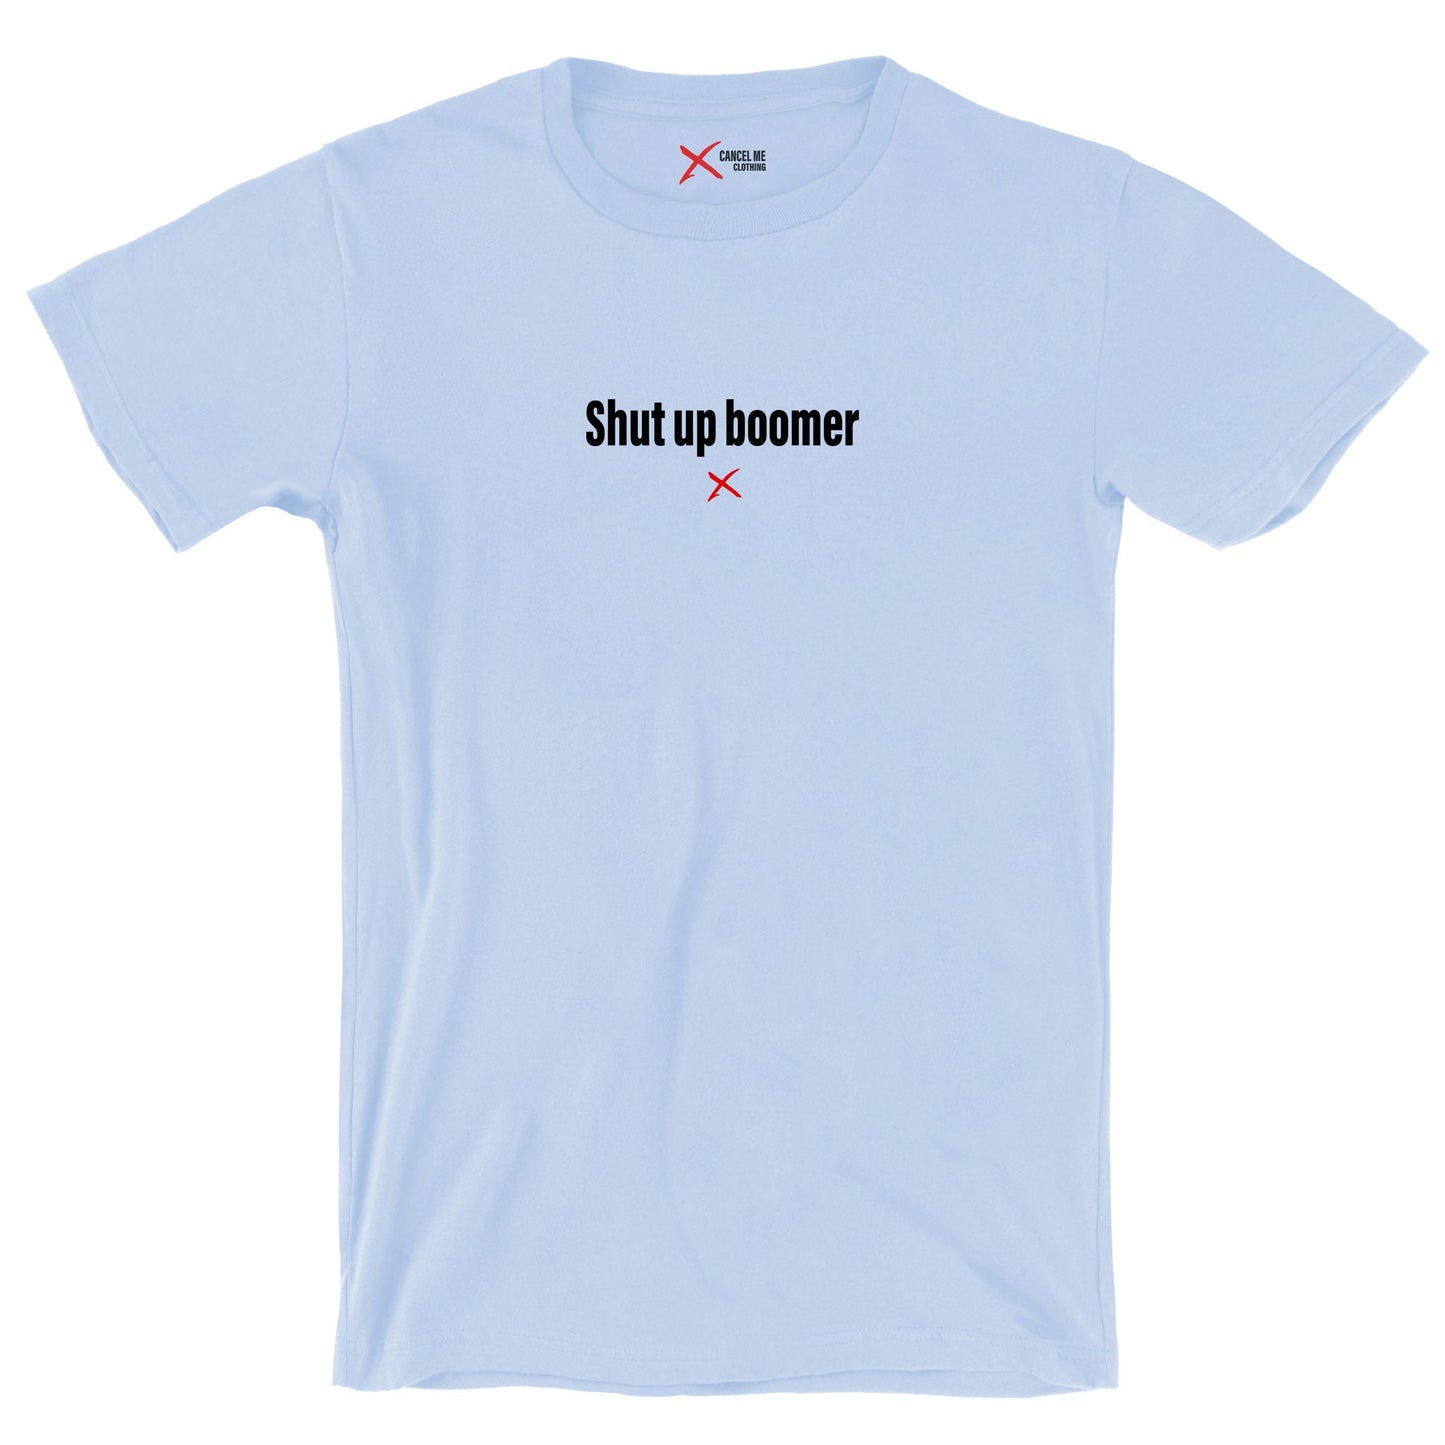 Shut up boomer - Shirt